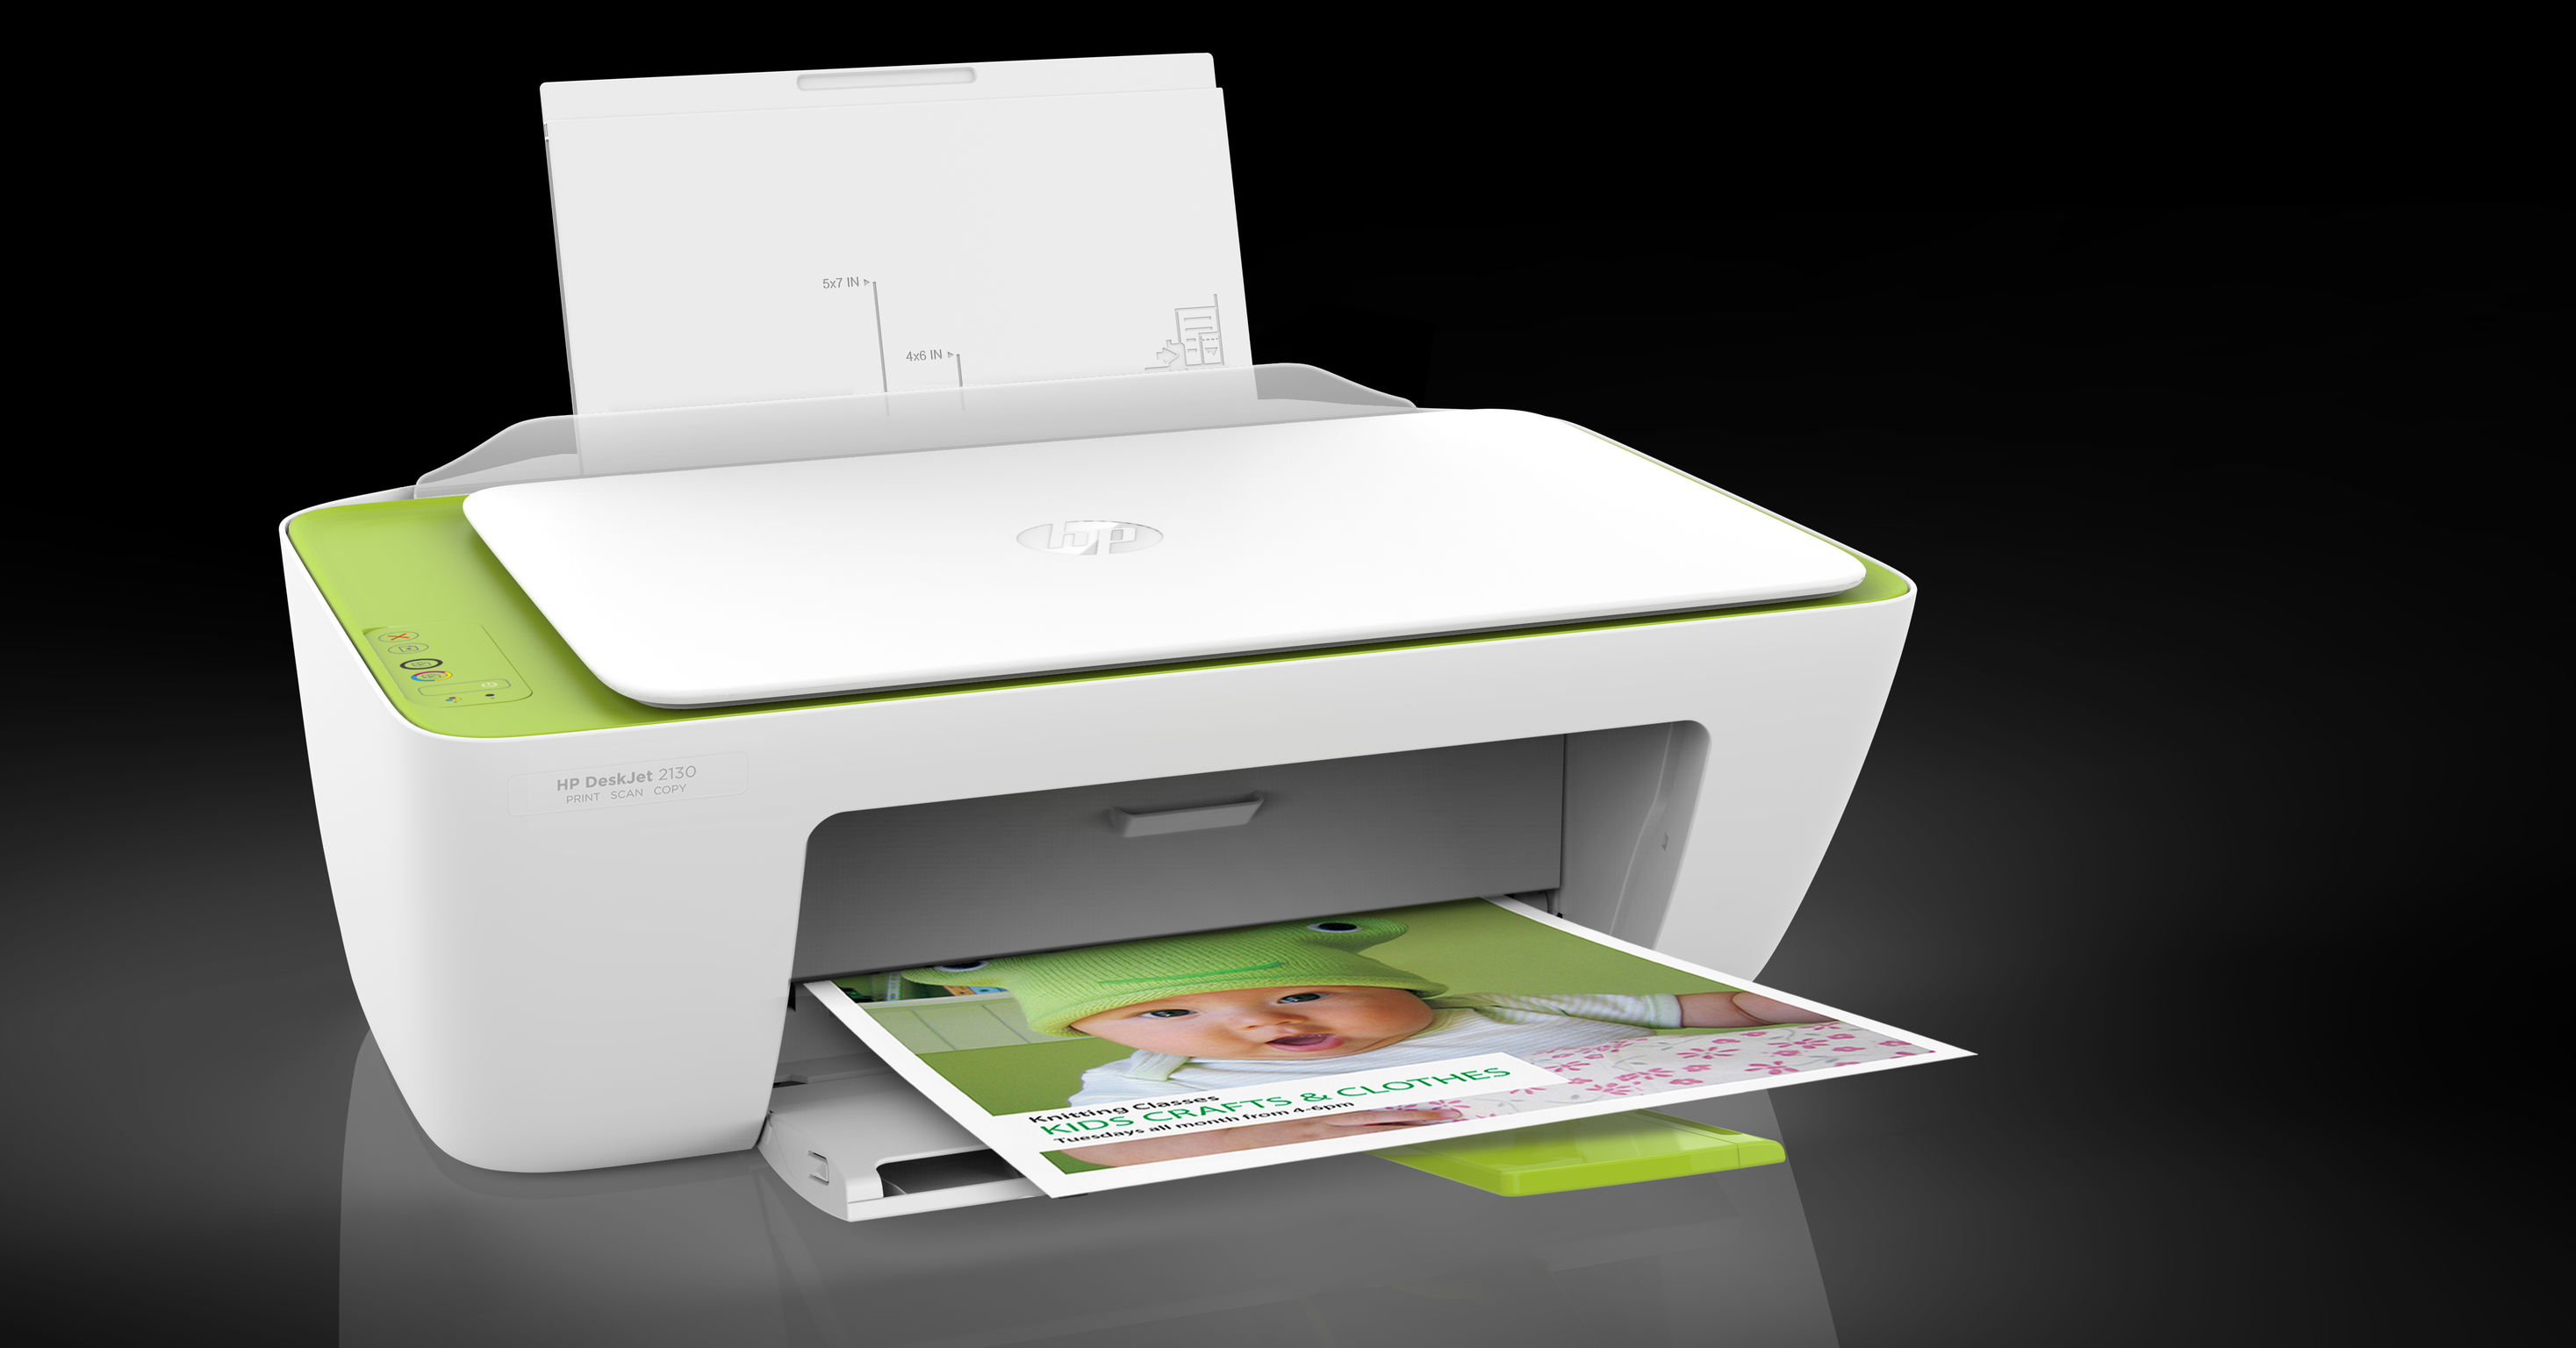 Принтер сканер HP Deskjet 2130